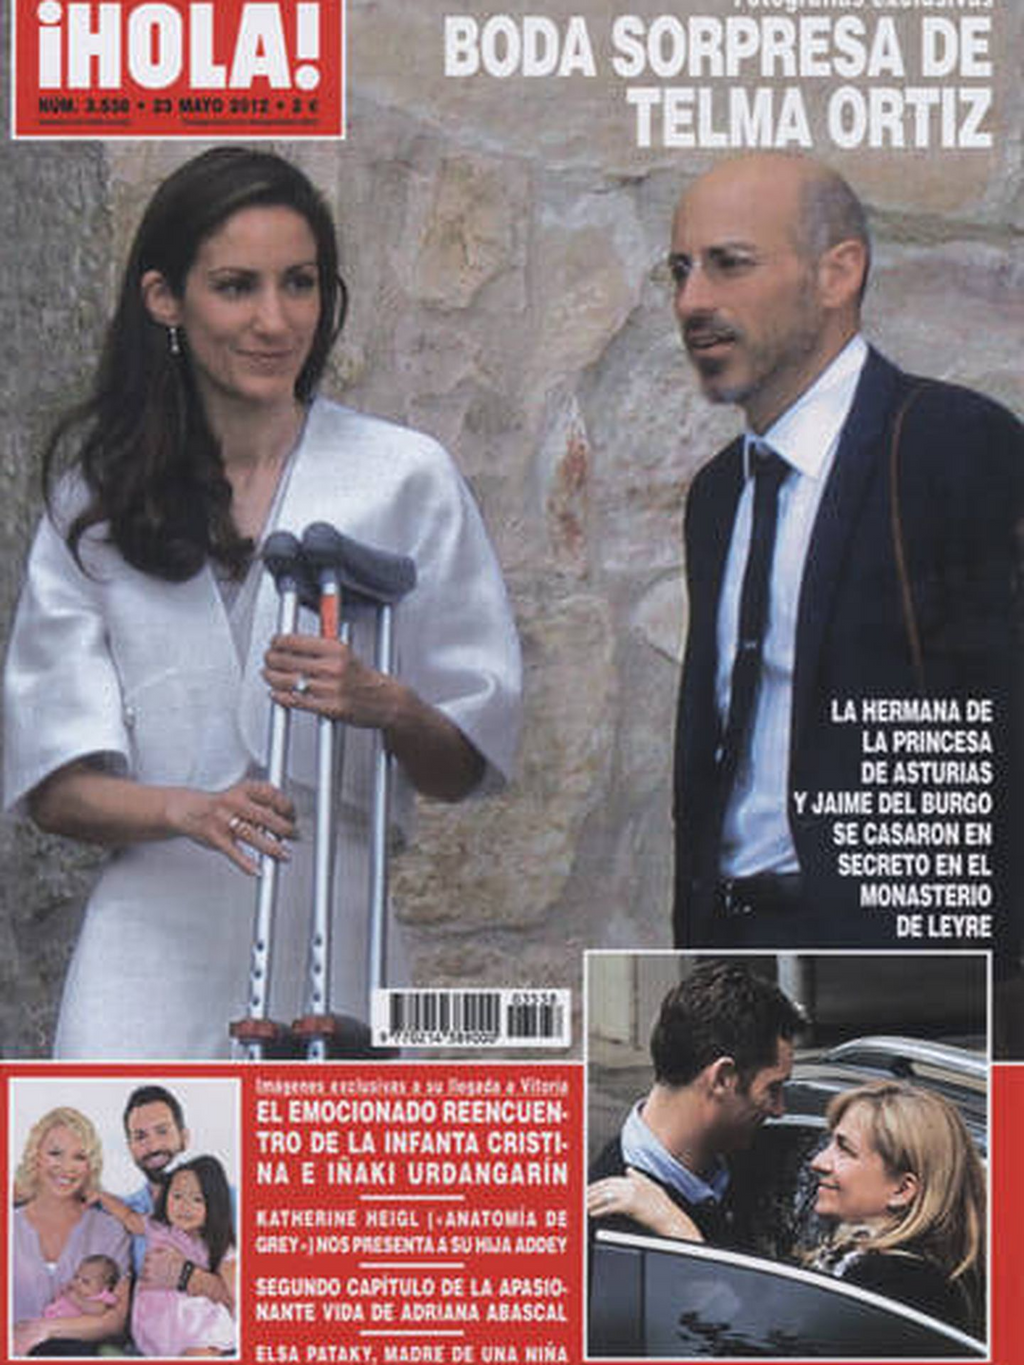 La portada de ¡HOLA!, recogiendo la boda de Telma Ortiz y Jaime del Burgo